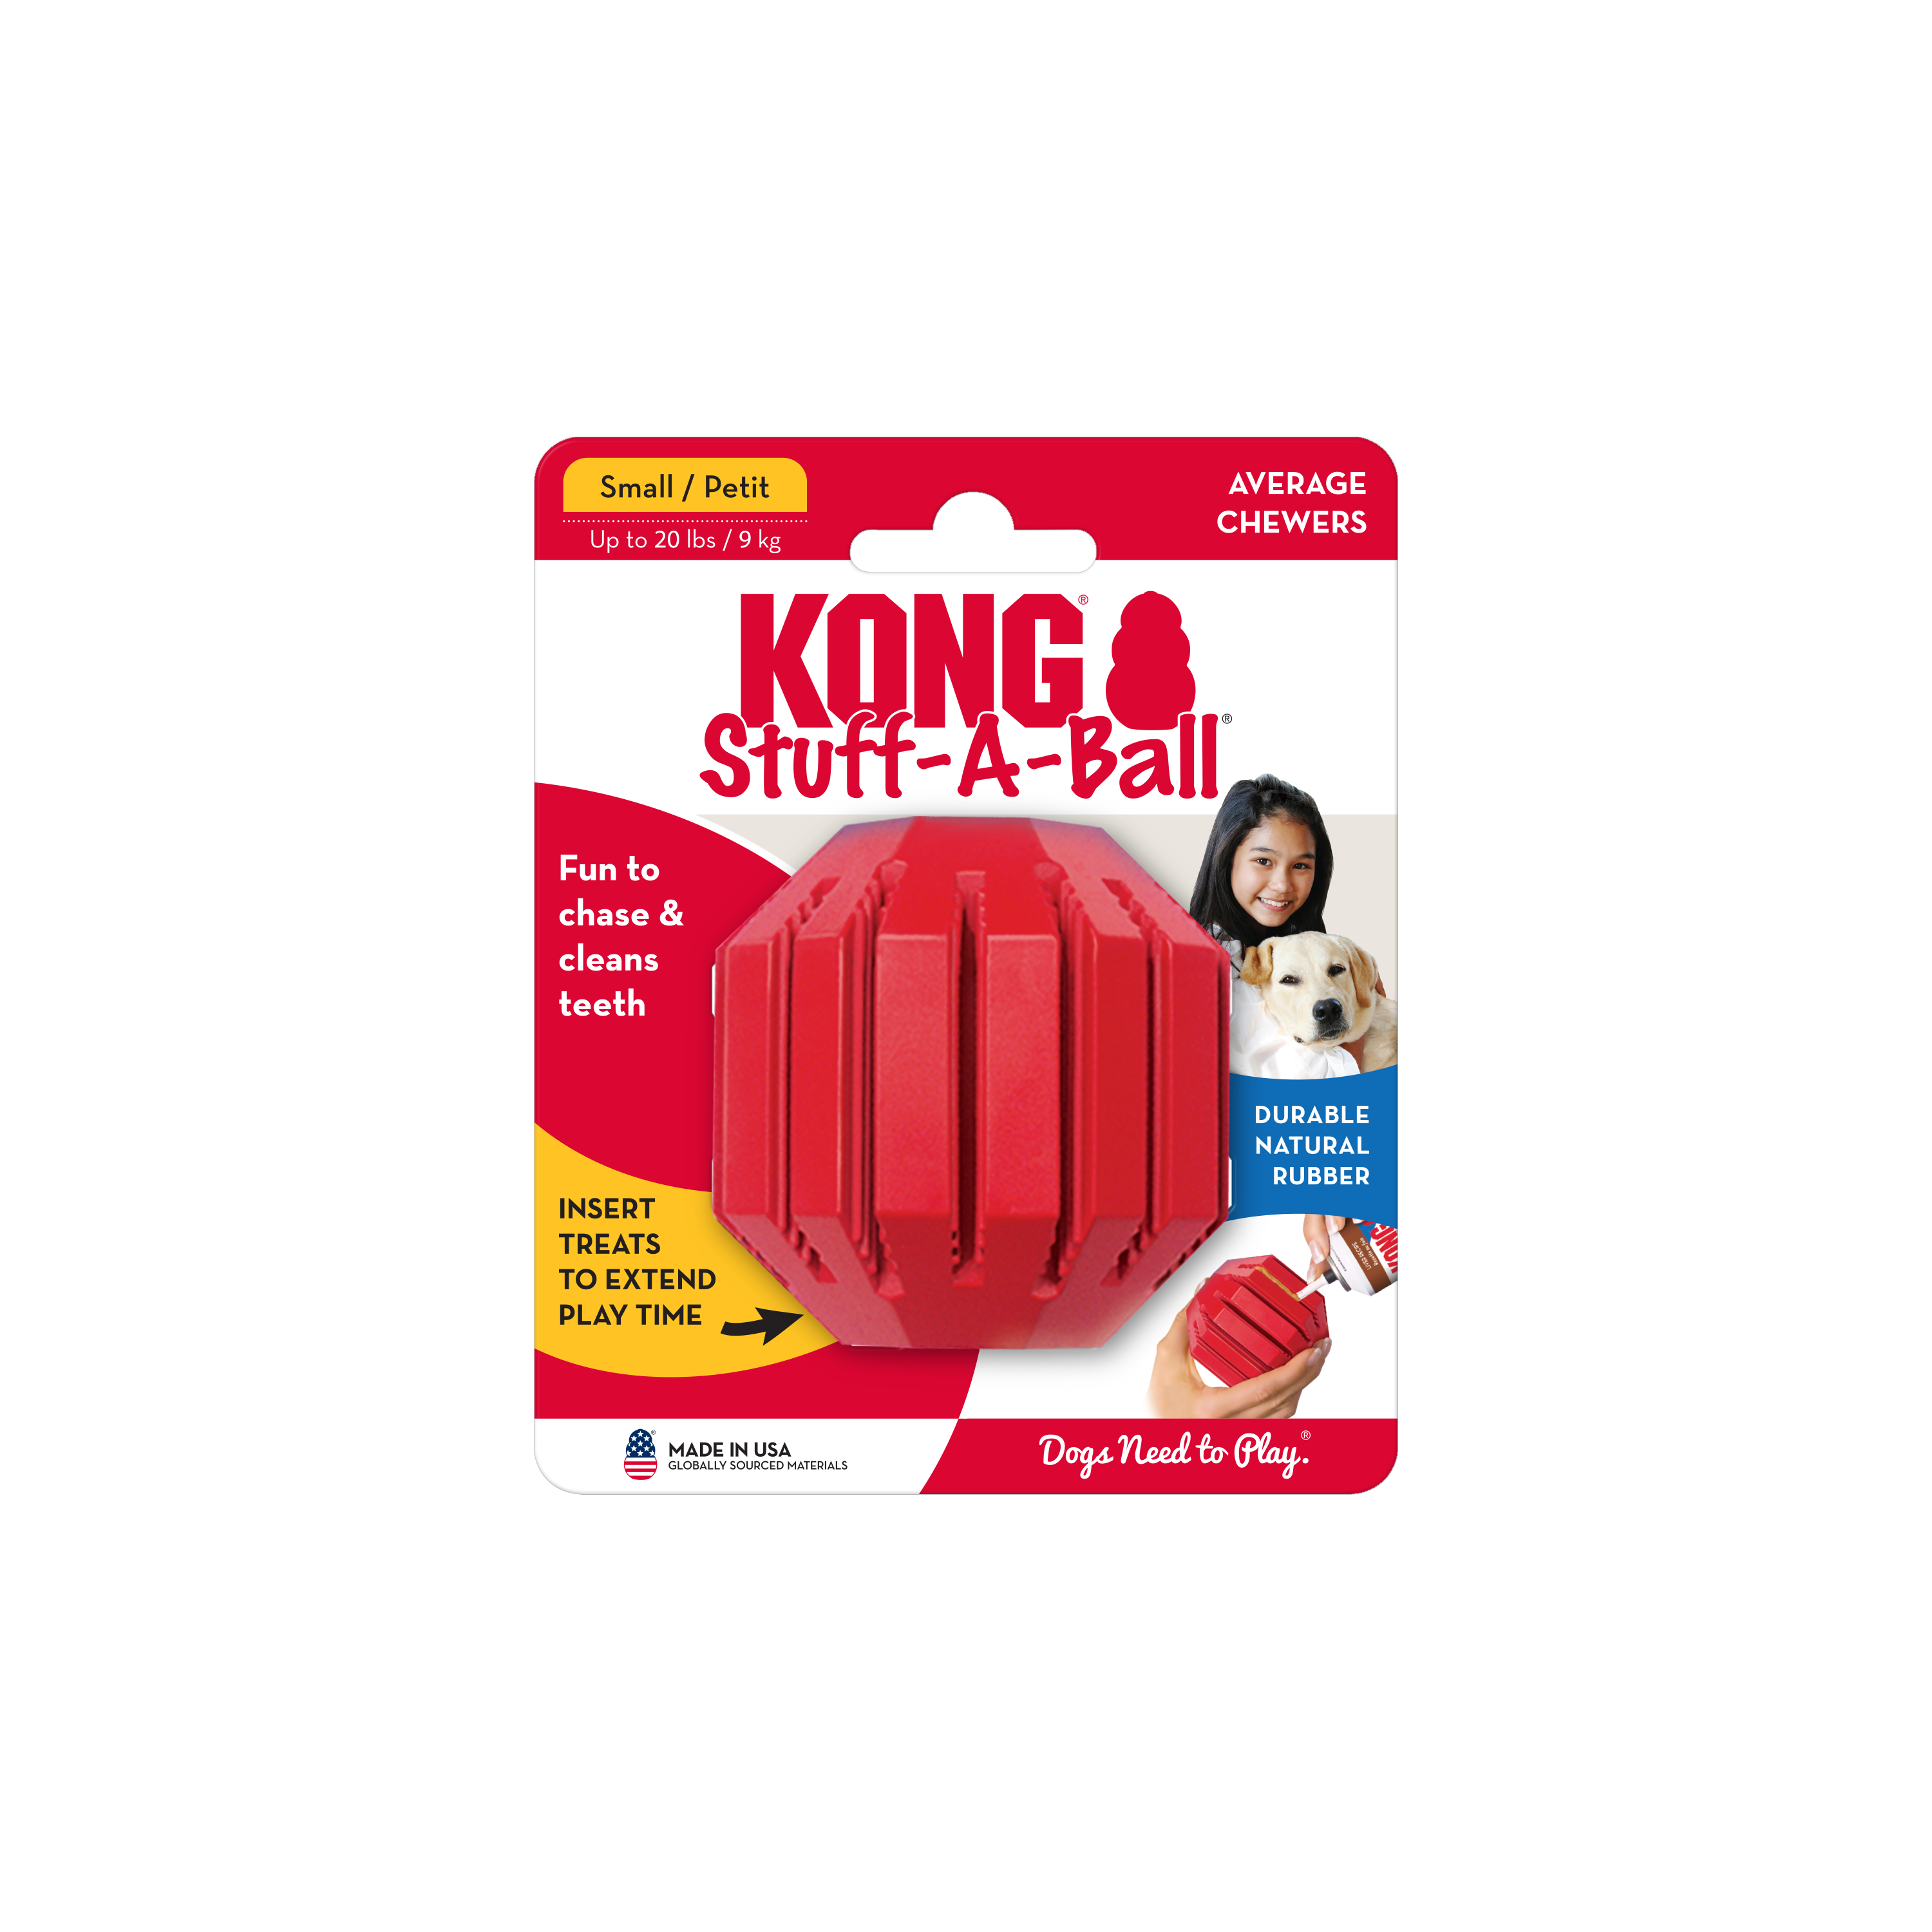 KONG Stuff-A-Ball product image